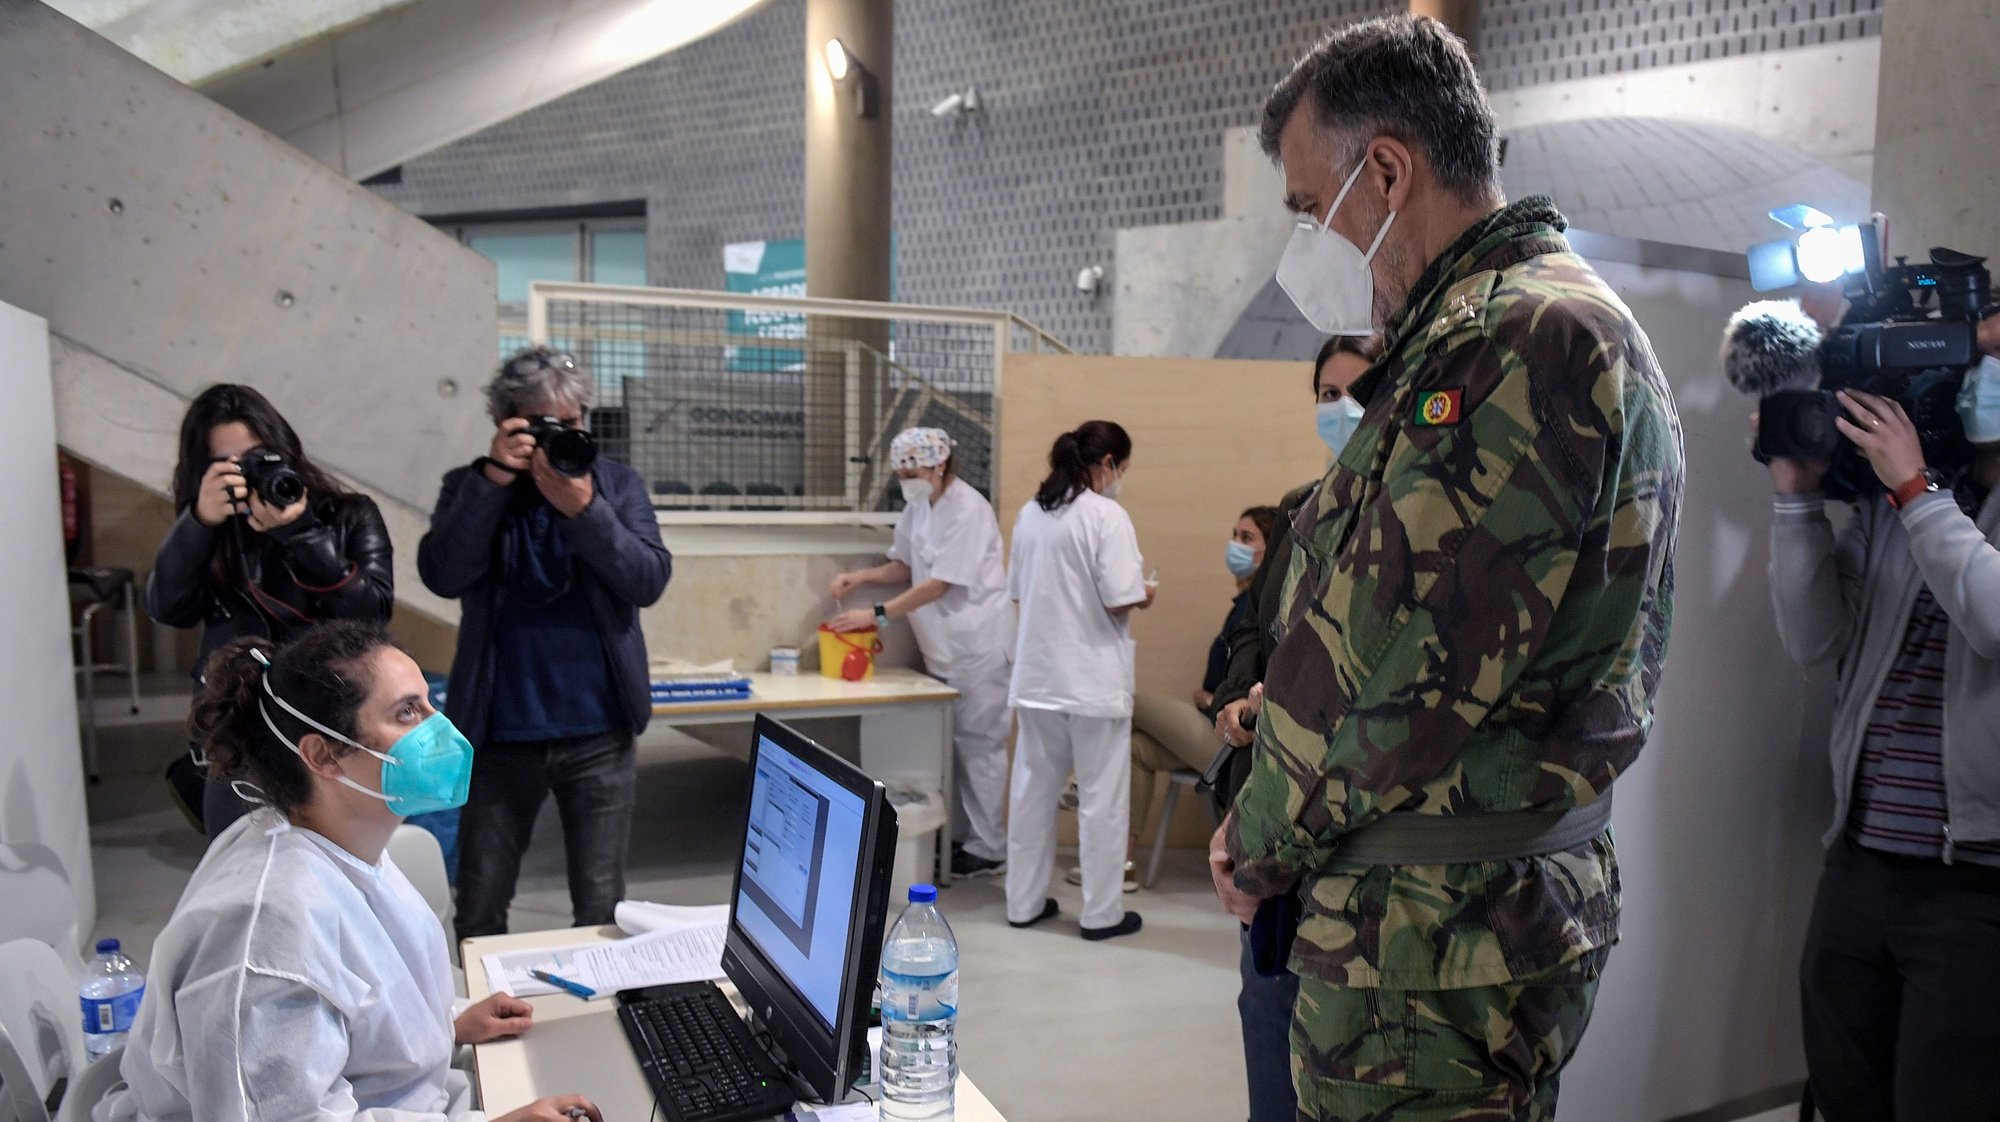 O coordenador nacional da Task Force para o plano de vacinação contra a Covid-19 em Portugal, vice-almirante Henrique de Gouveia e Melo visita o Centro de Vacinação de Gondomar (ACES Gondomar), instalado no Pavilhão Multiusos em Gondomar. 18 de Abril 2021. FERNANDO VELUDO/LUSA